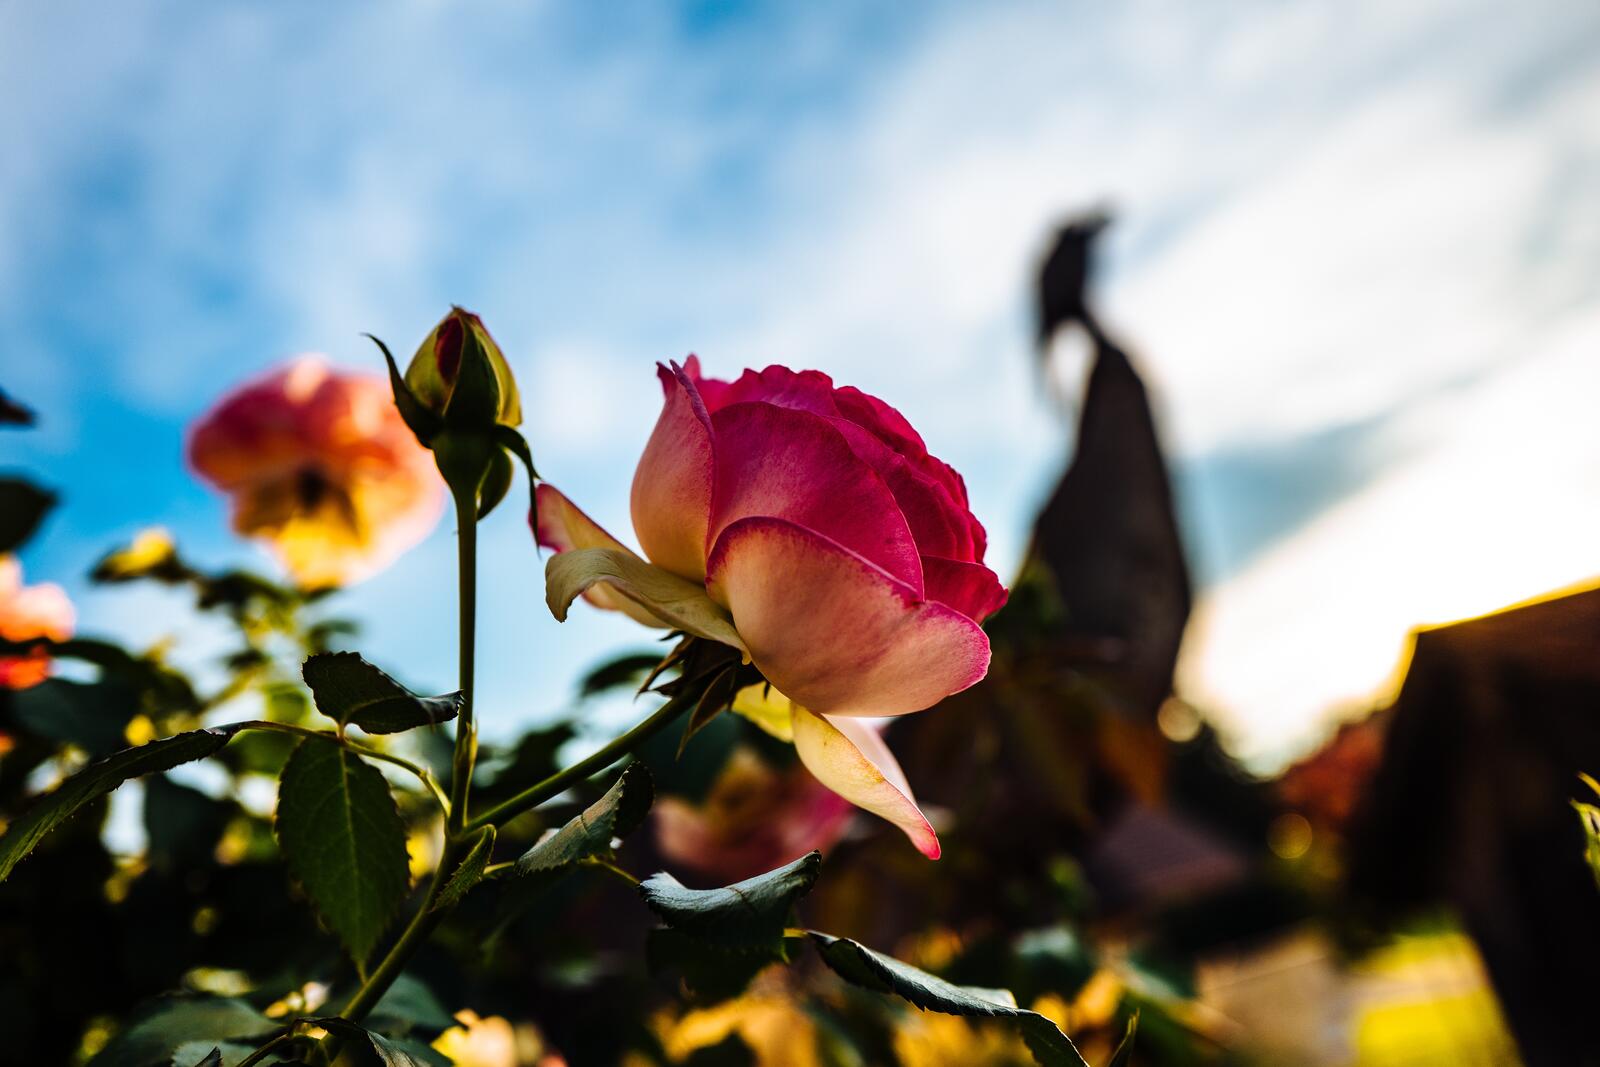 Бесплатное фото Кустарник с красивыми красными розами с оранжевым оттенком